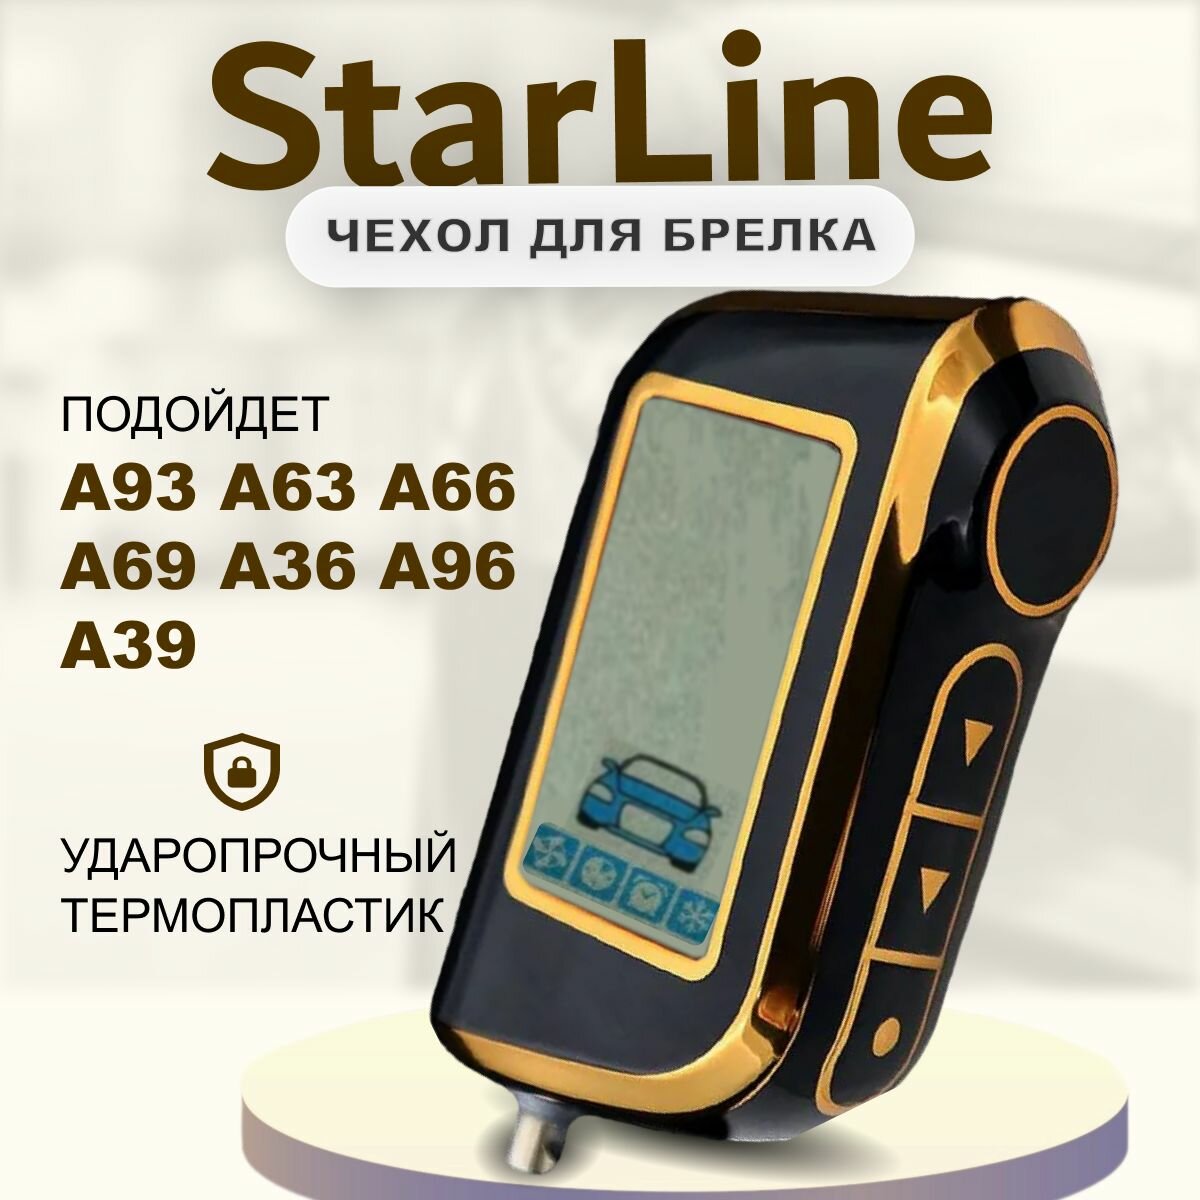 Чехол для брелка Starline A93, A36, A69, A96, A66, A63, A39, чехол на пульт брелока сигнализации Старлайн а93 черный/золото